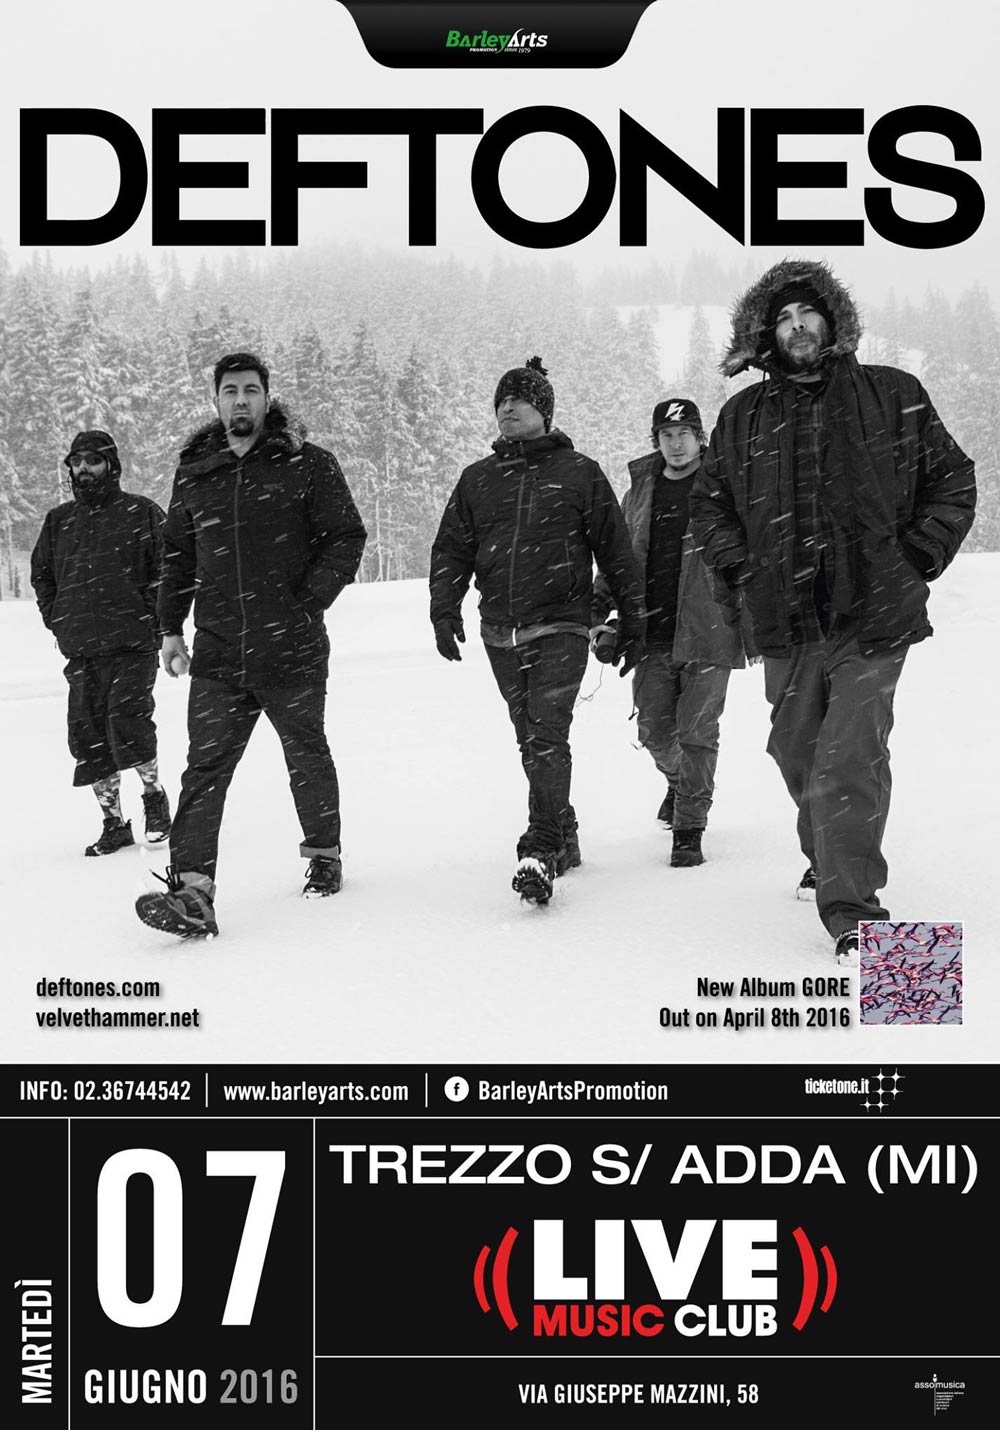 7 июня состоится концерт Deftones в Милане (Италия)